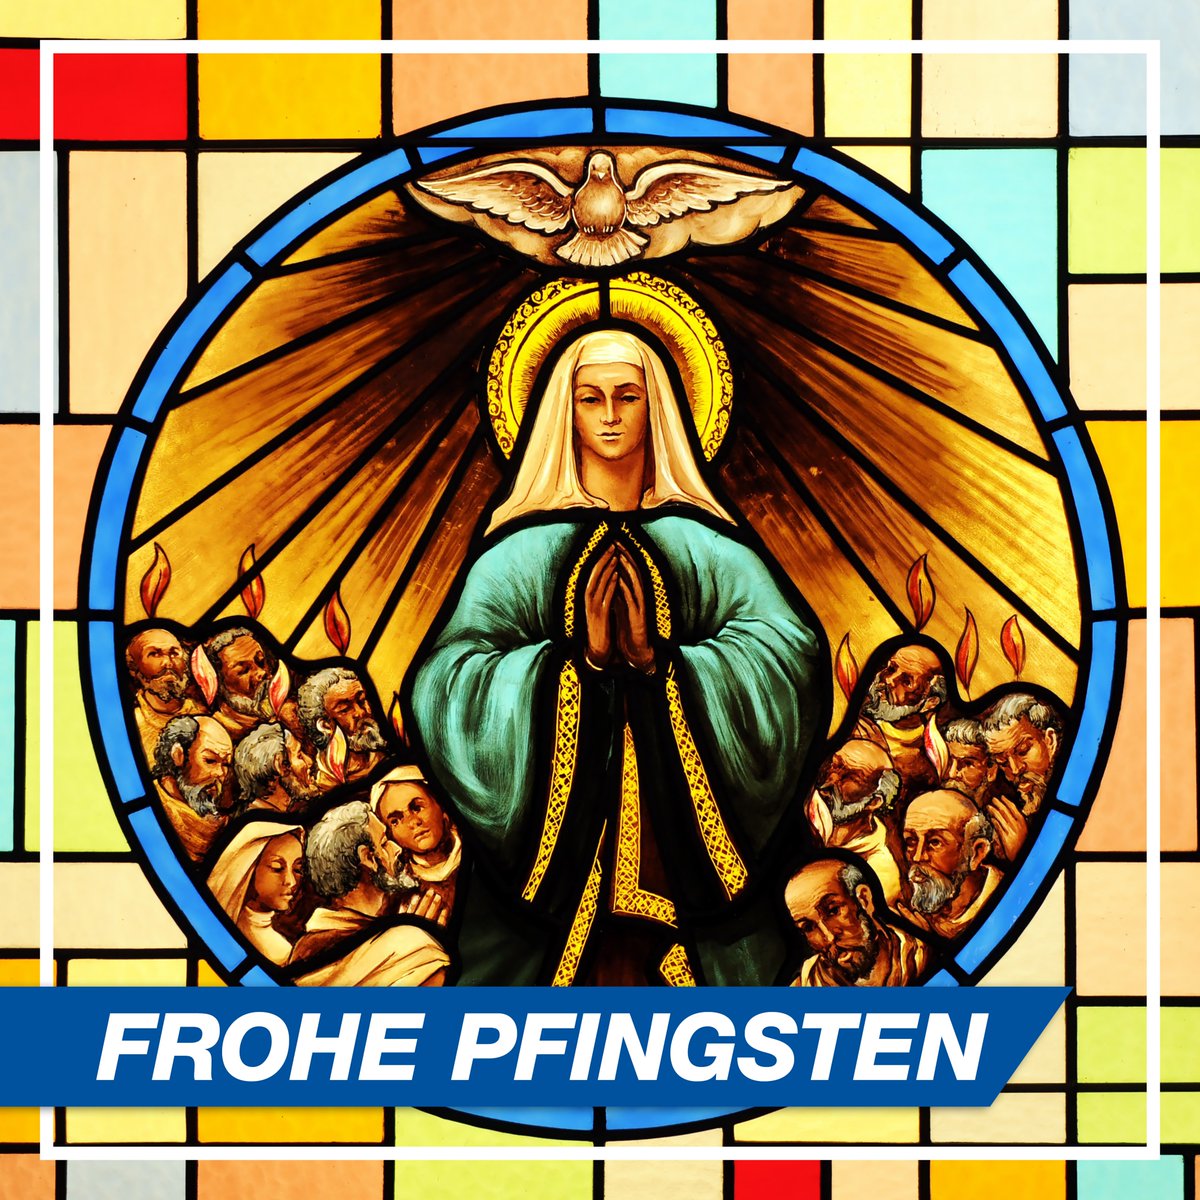 Wir wünschen Ihnen gesegnetes Pfingstfest! #Pfingsten